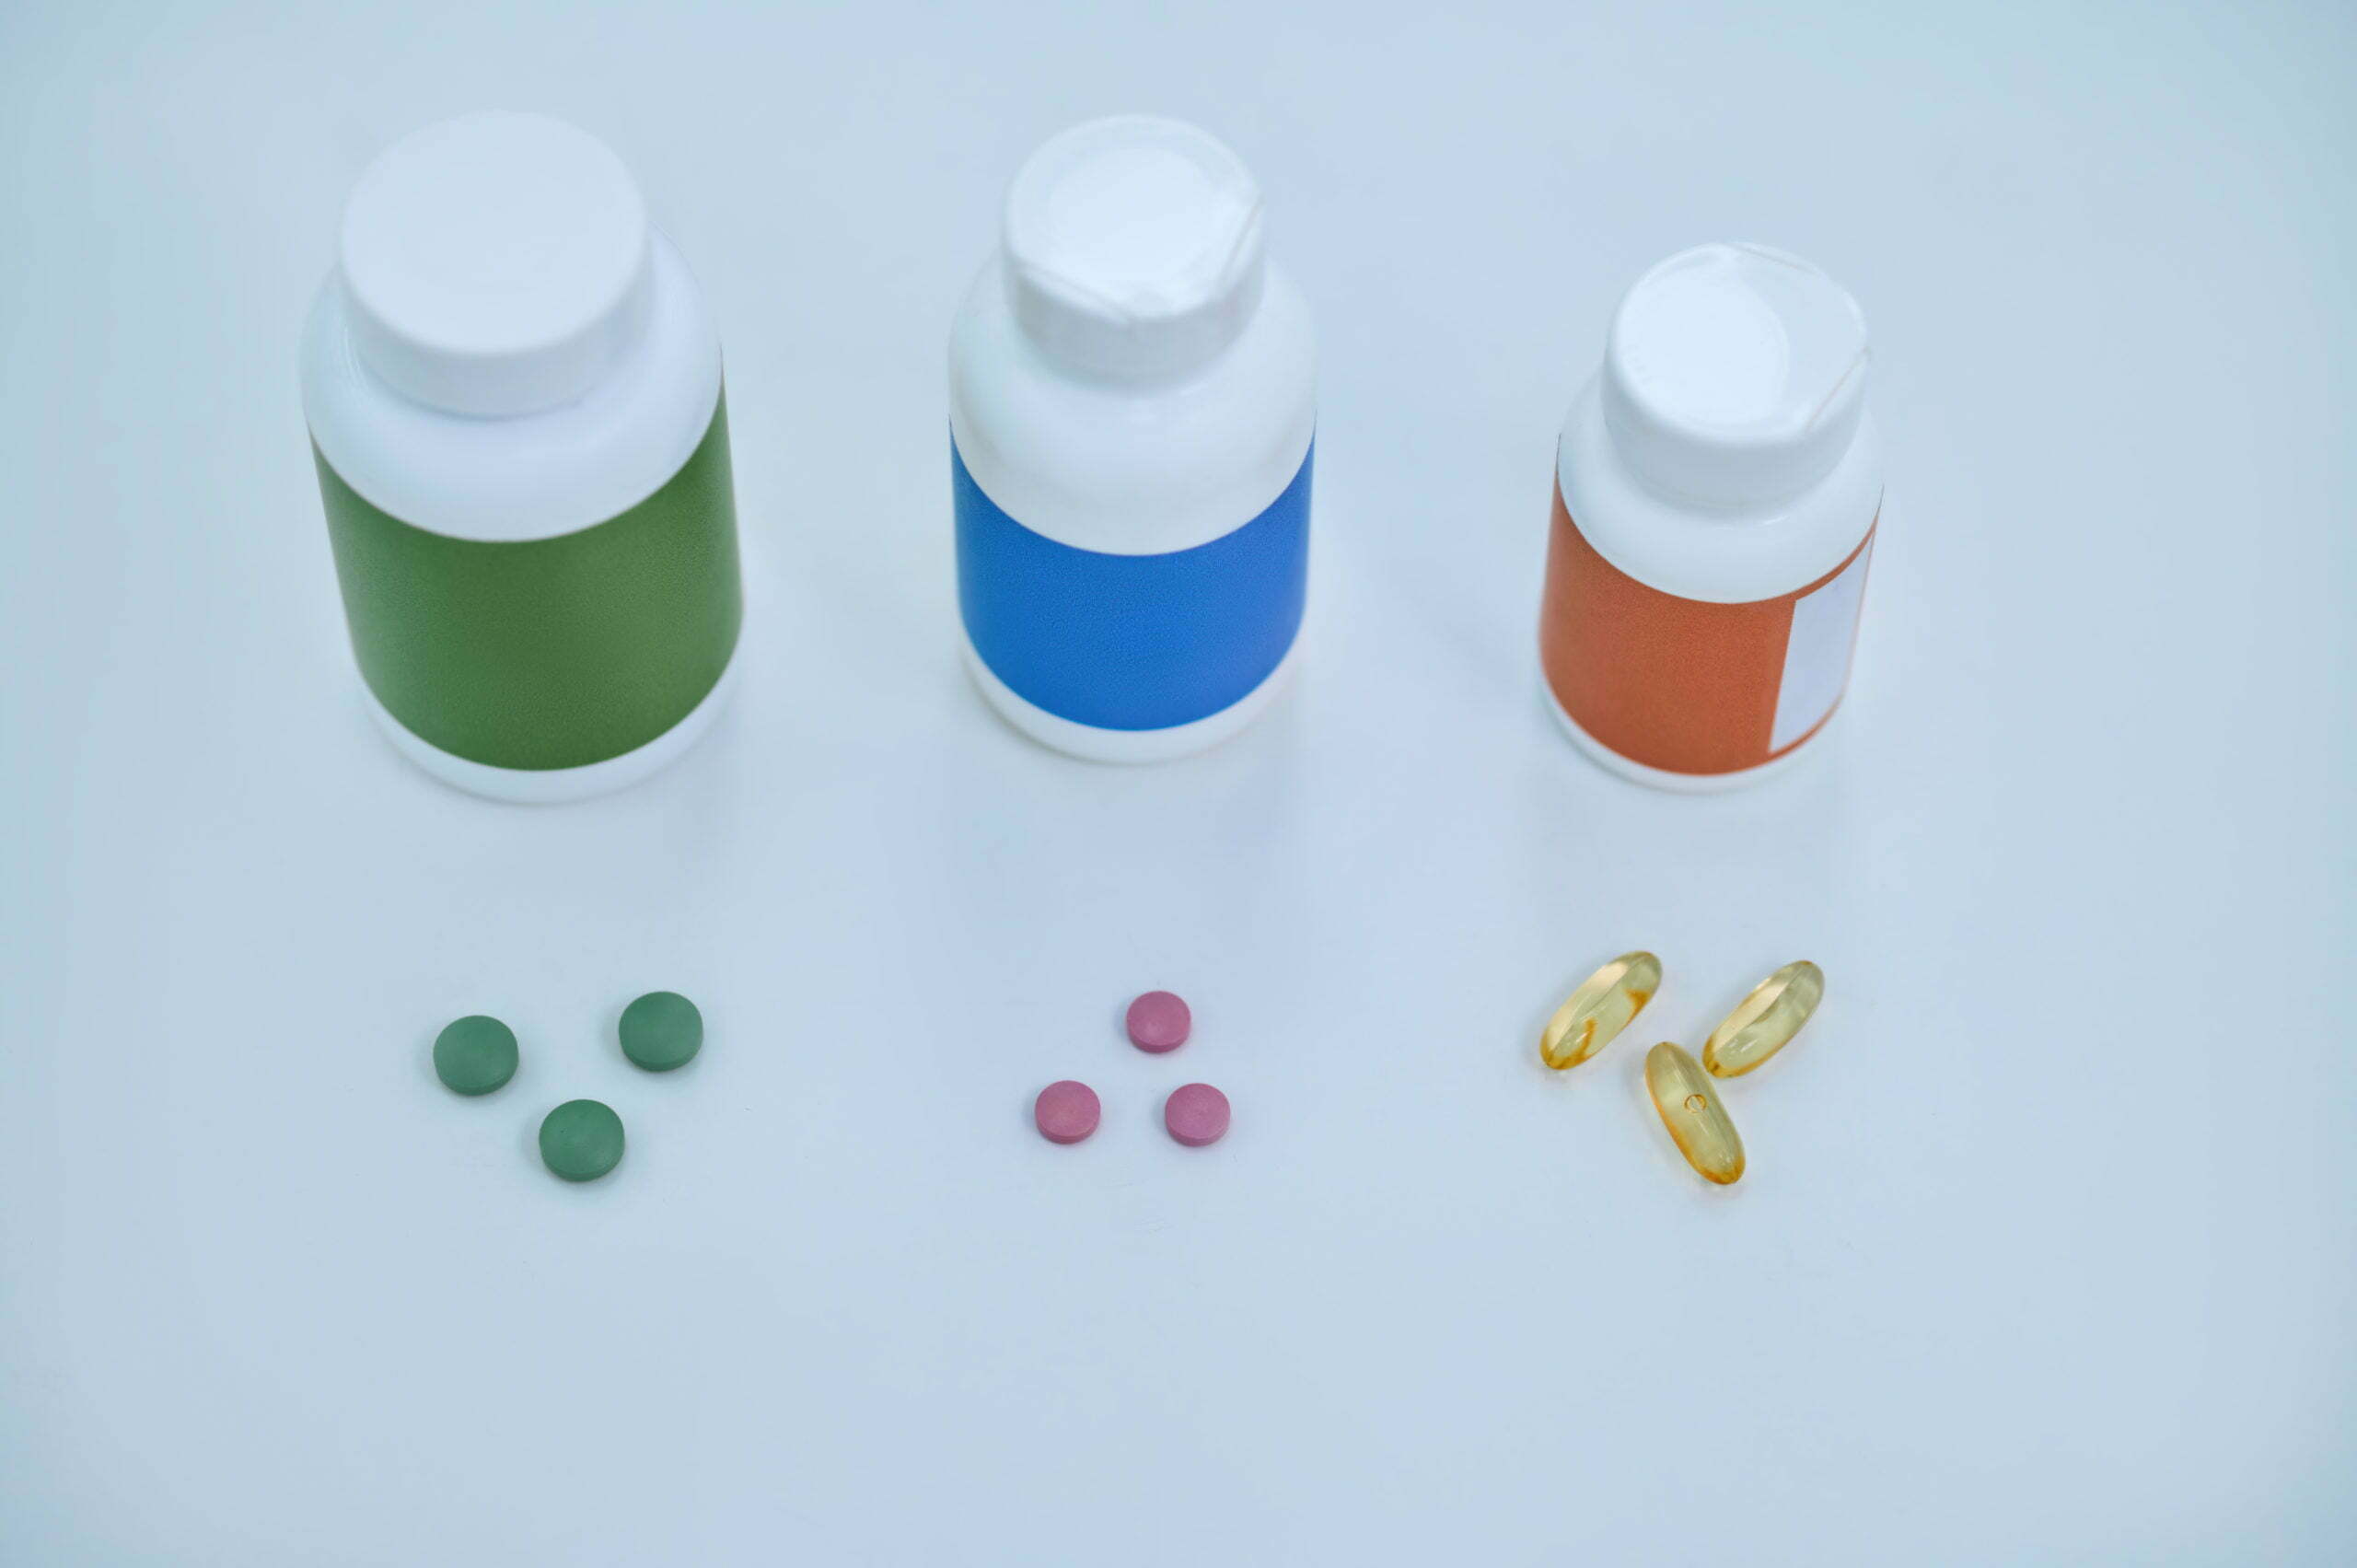 a group of medicine bottles